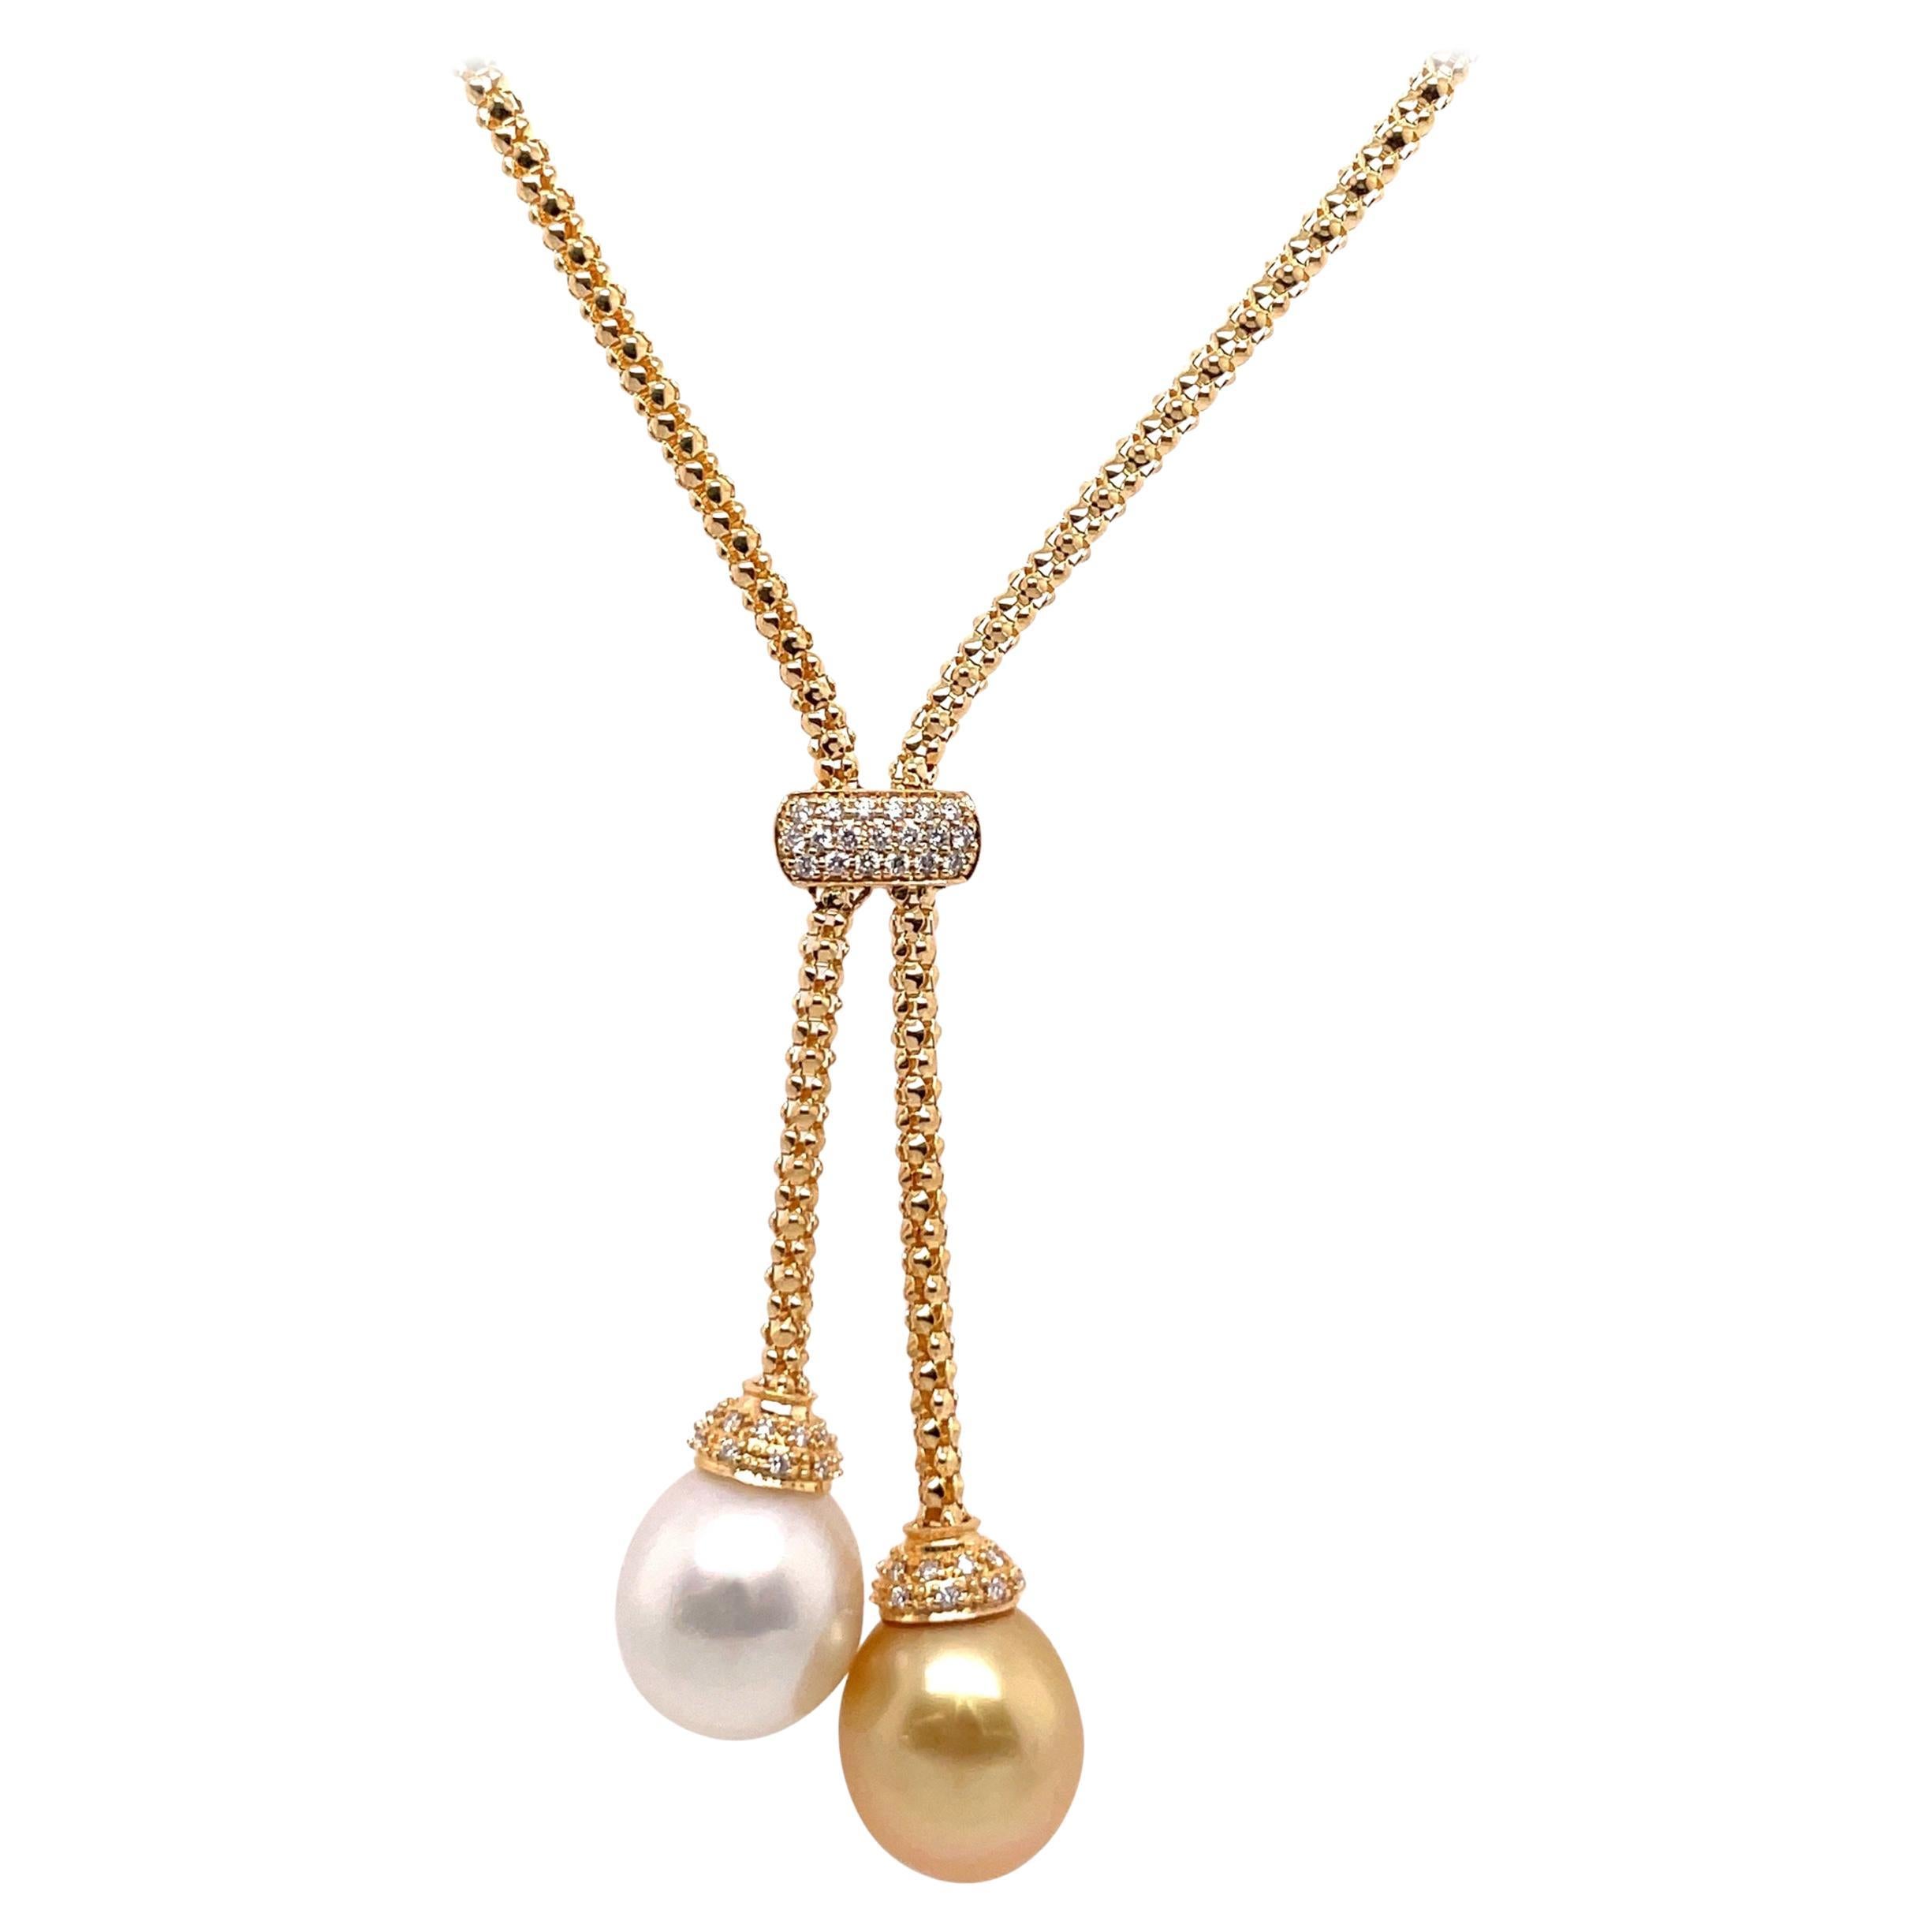 Collier à pompon en or jaune 18 carats avec perles des mers du Sud et diamants 0,27 carat